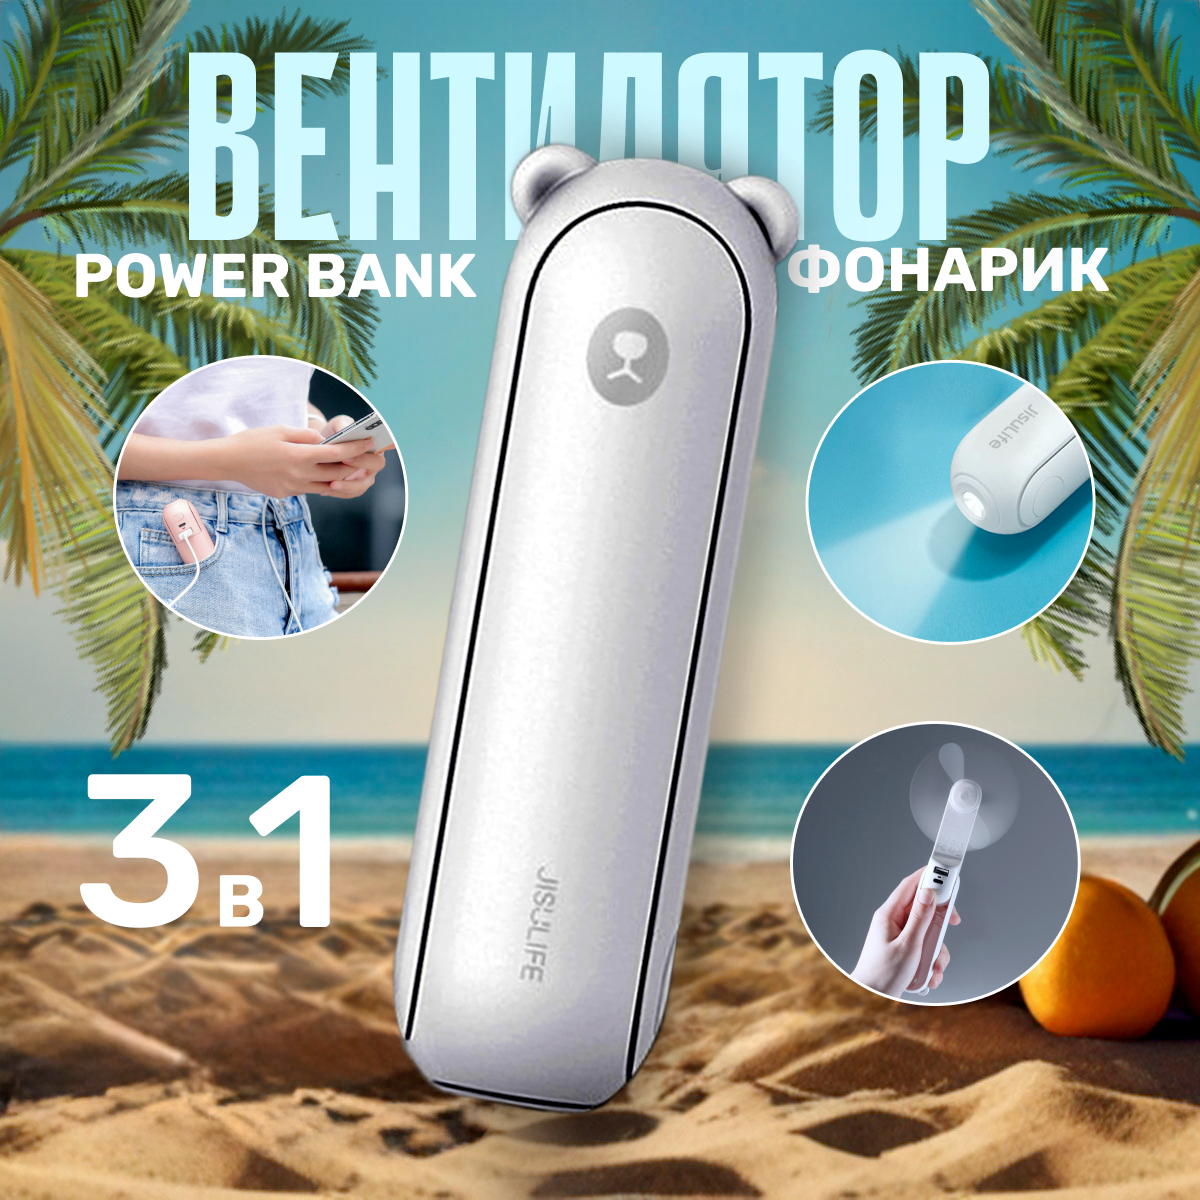 Вентилятор повербанк фонарик (3 в 1) Мишка белый Bear Powerbank ручной, портативный, настольный (USB-кабель TYPE-C в комплекте), внешний аккумулятор, пауэрбанк